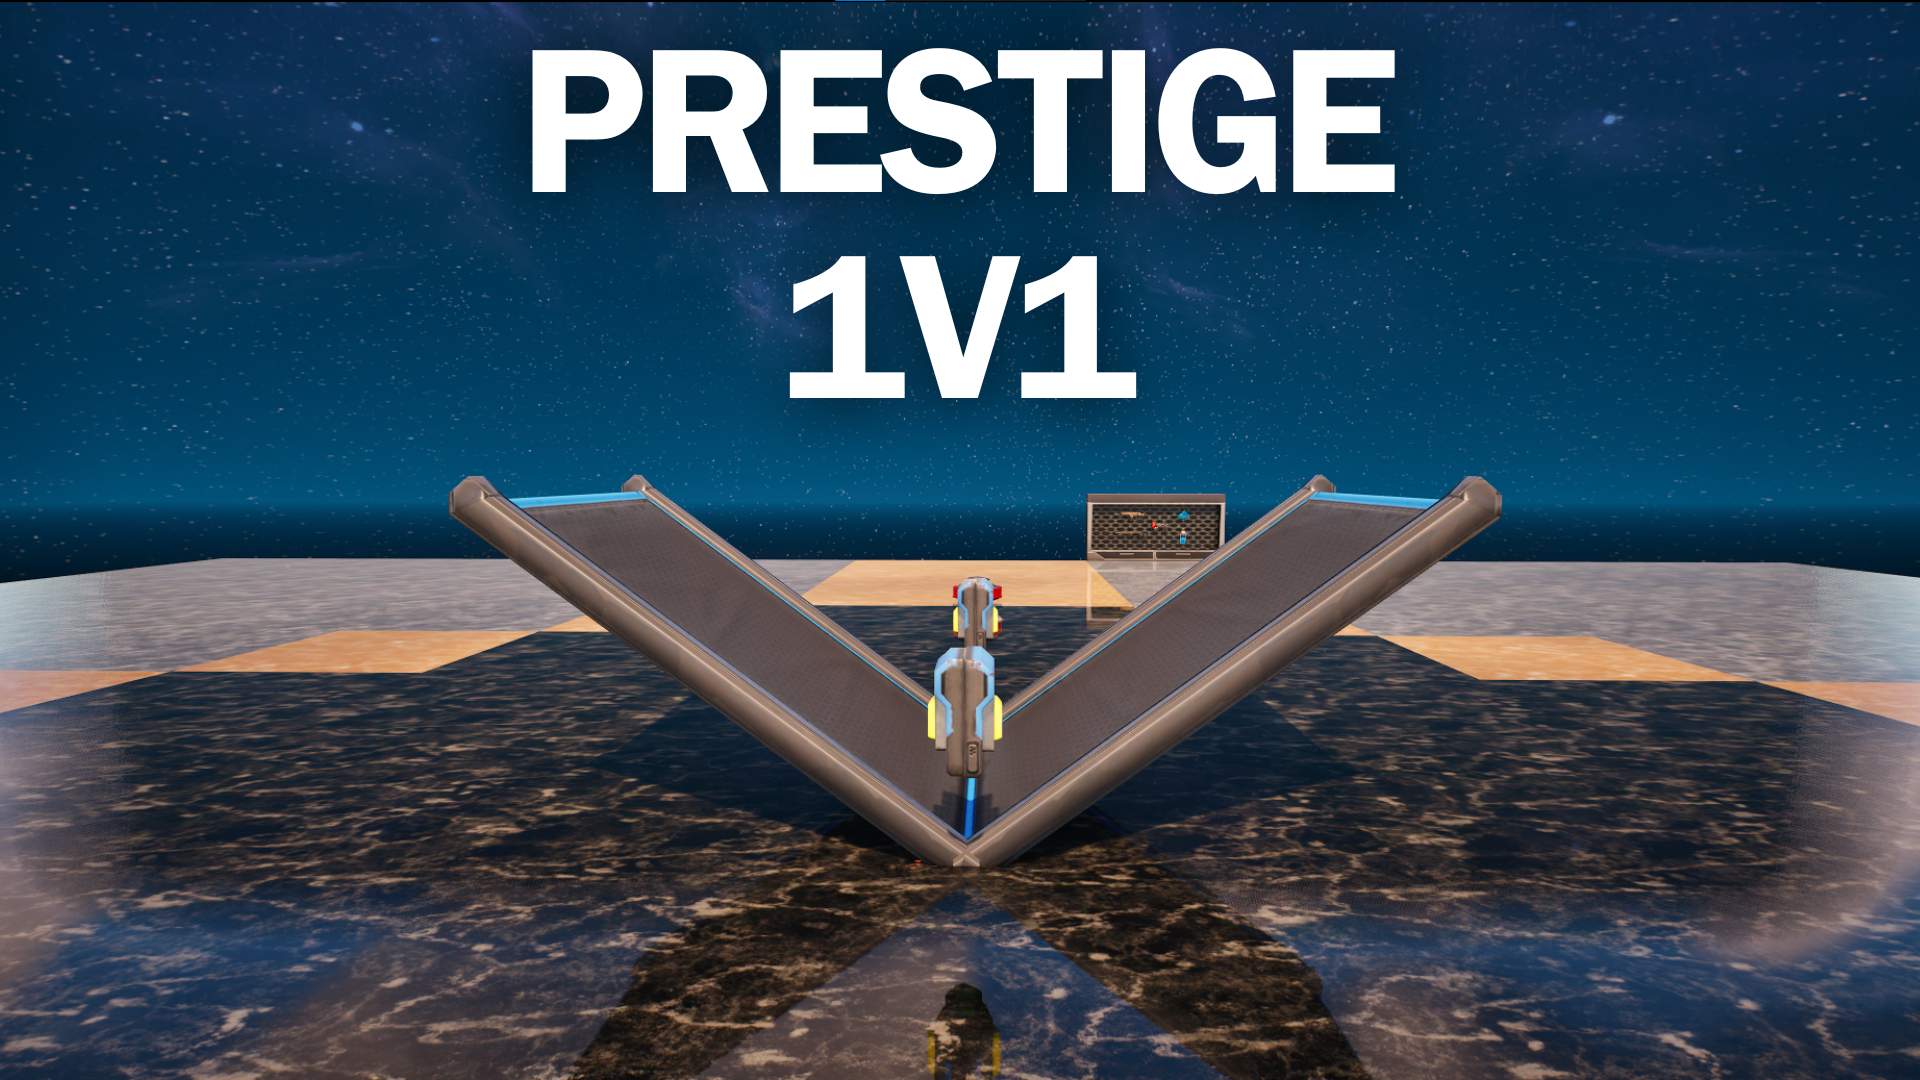 Prestige 1v1 BUILDFIGHTعاركني بالبناء 💎